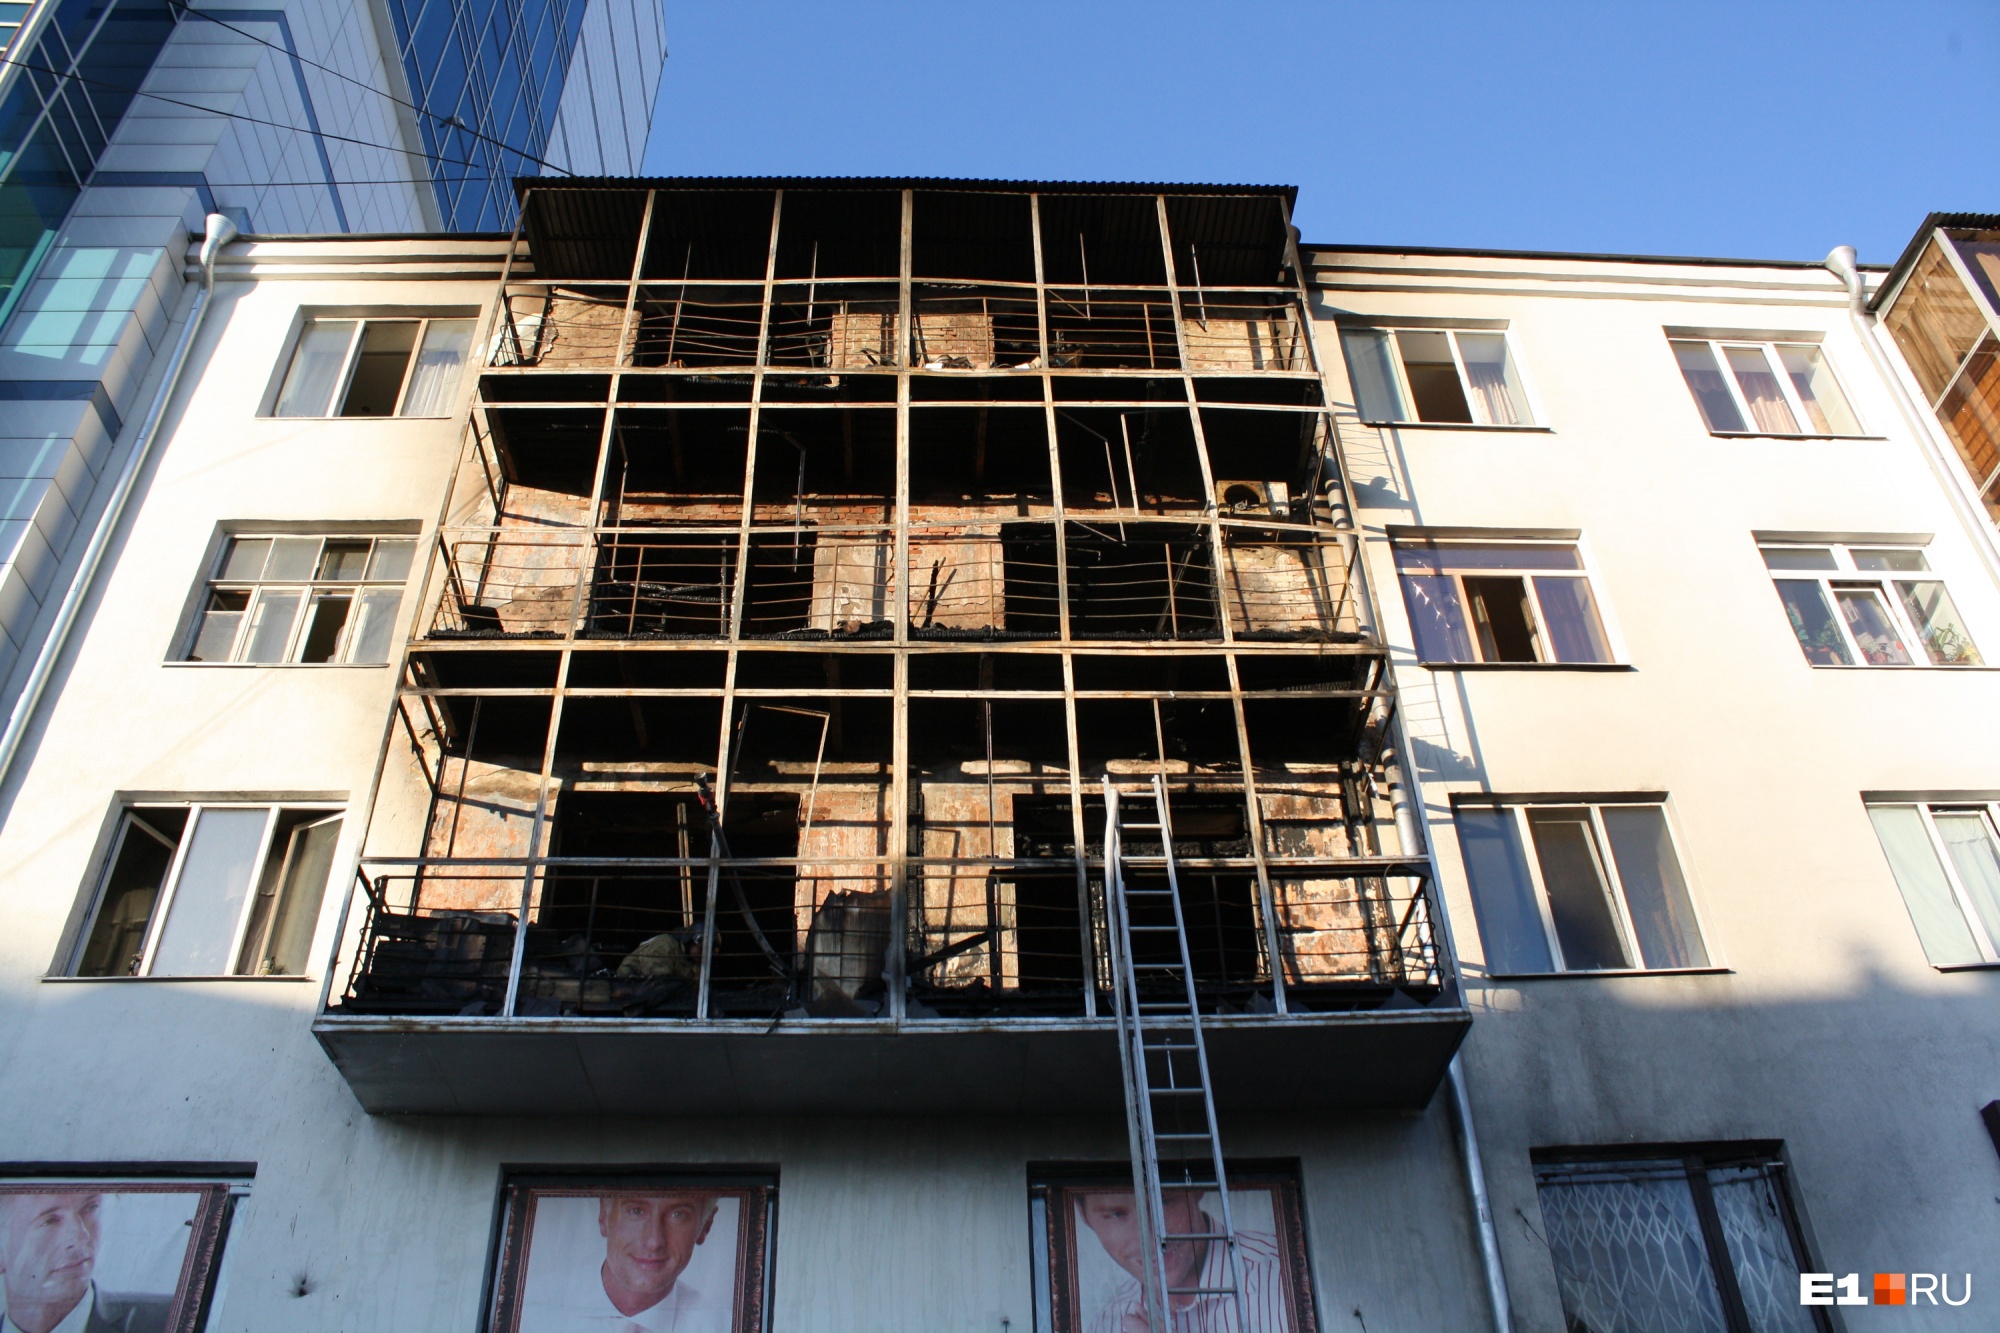 Жильцам дома-памятника в центре Екатеринбурга предложили выселиться из квартир посреди зимы